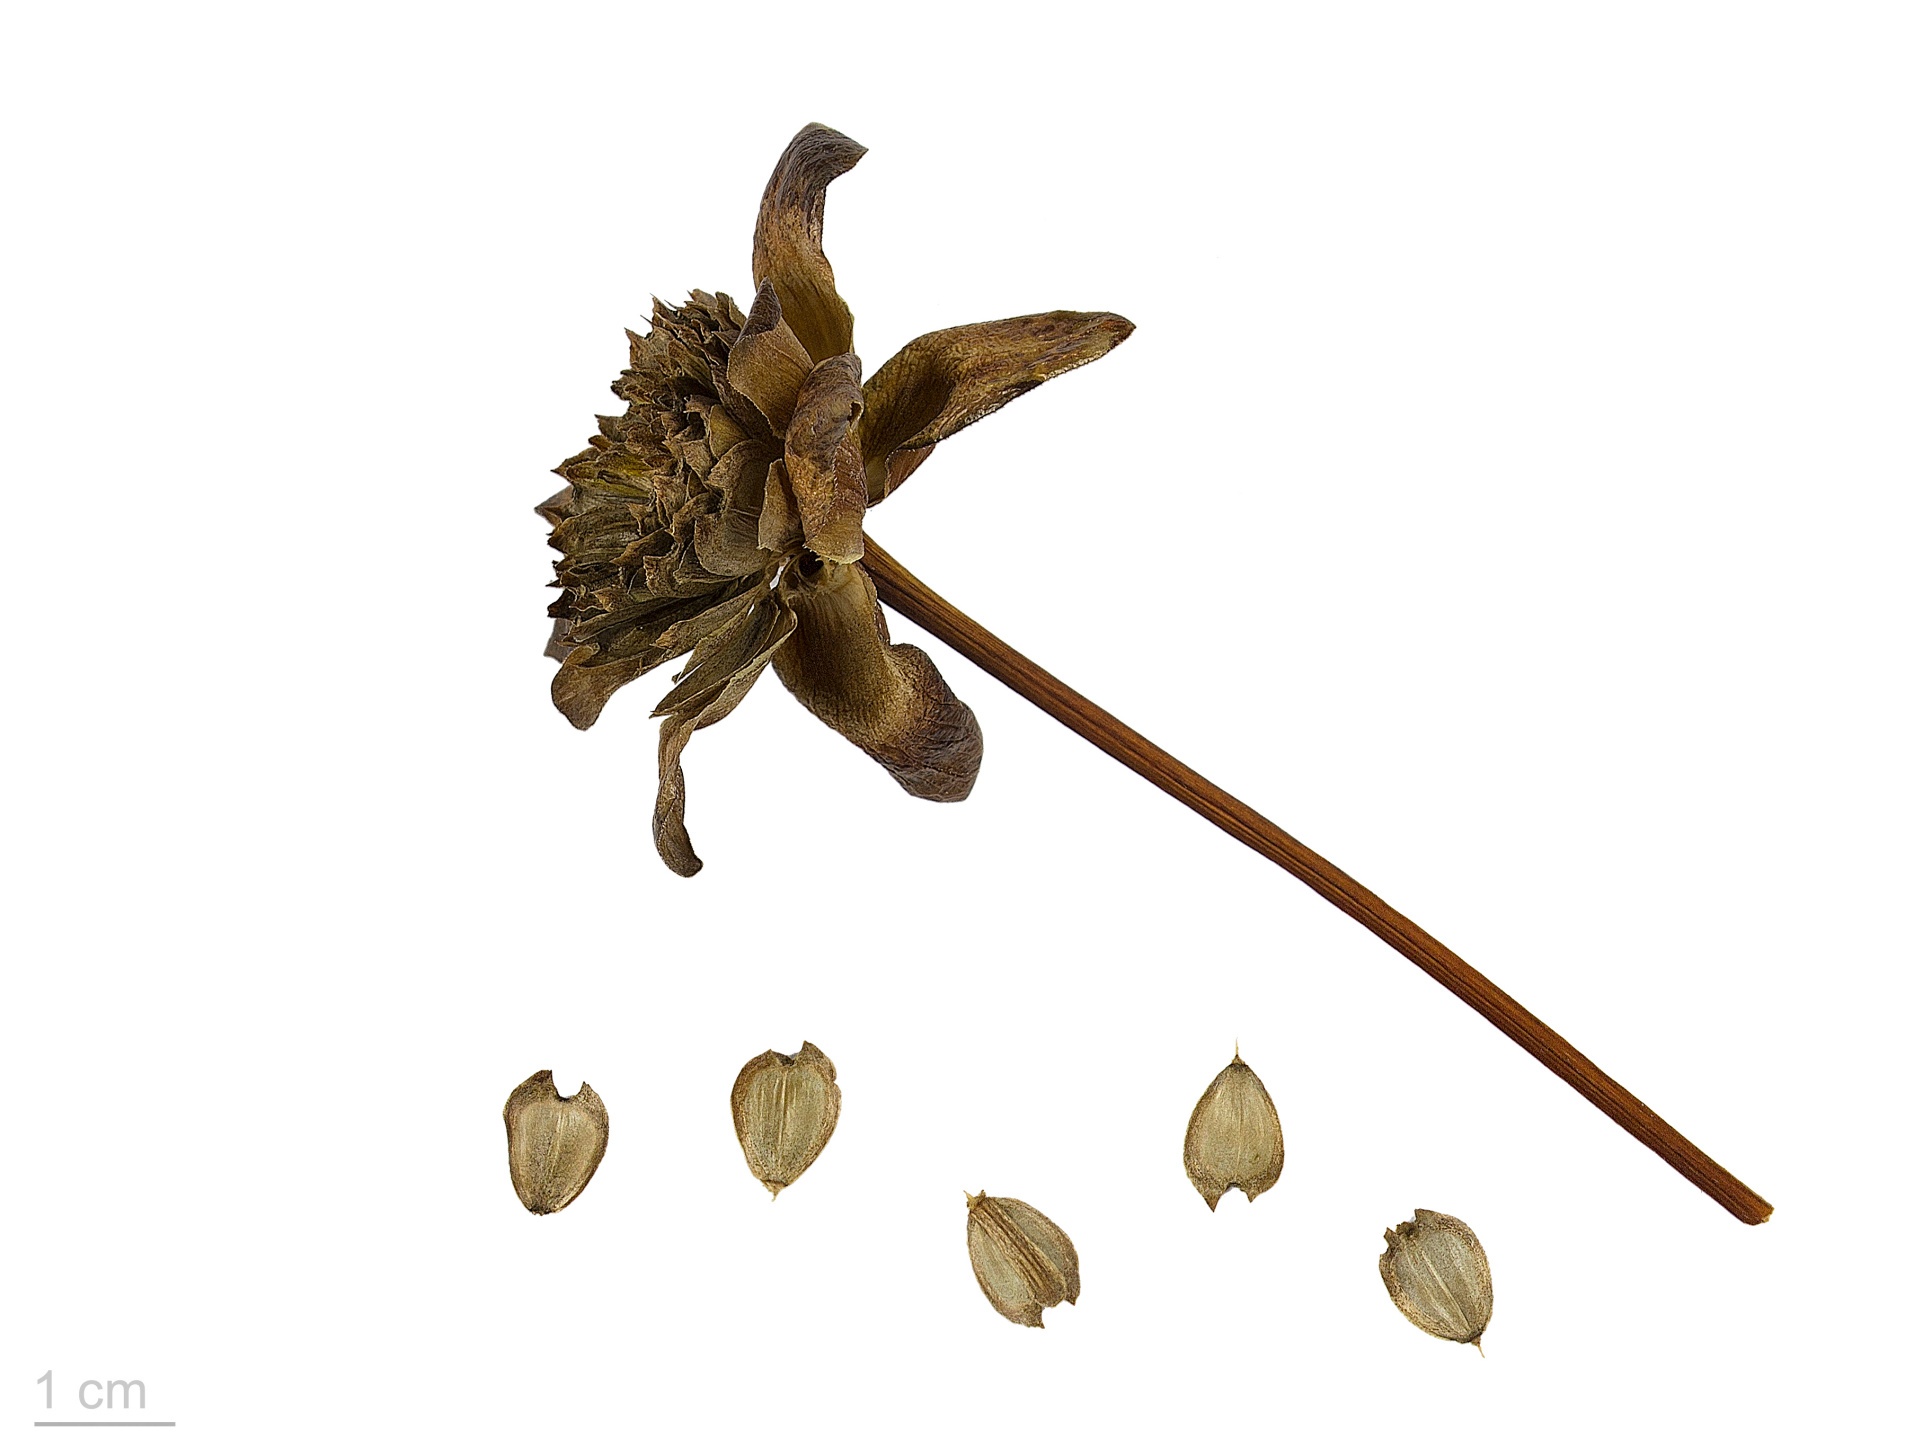 Il silfio, una pianta perduta da tempo con una ricca storia di proporzioni mitiche, era un tesoro prezioso del mondo antico.